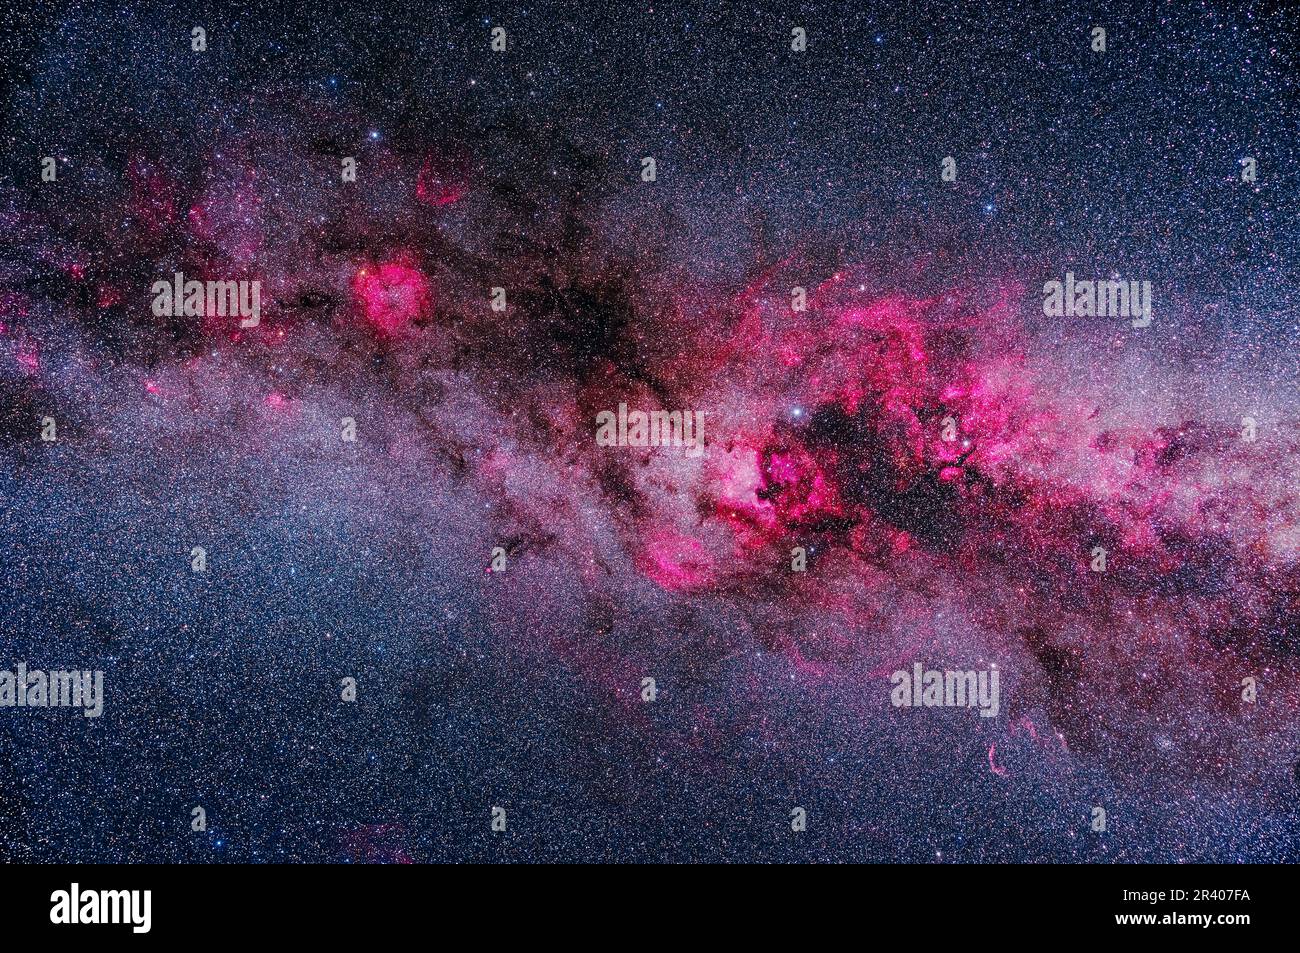 Una cornice delle principali aree di nebulosità chiara e scura in Cygnus e Cefeus, mostrando nebulose di emissione rosa in contrasto con le regioni polverose scure in Foto Stock